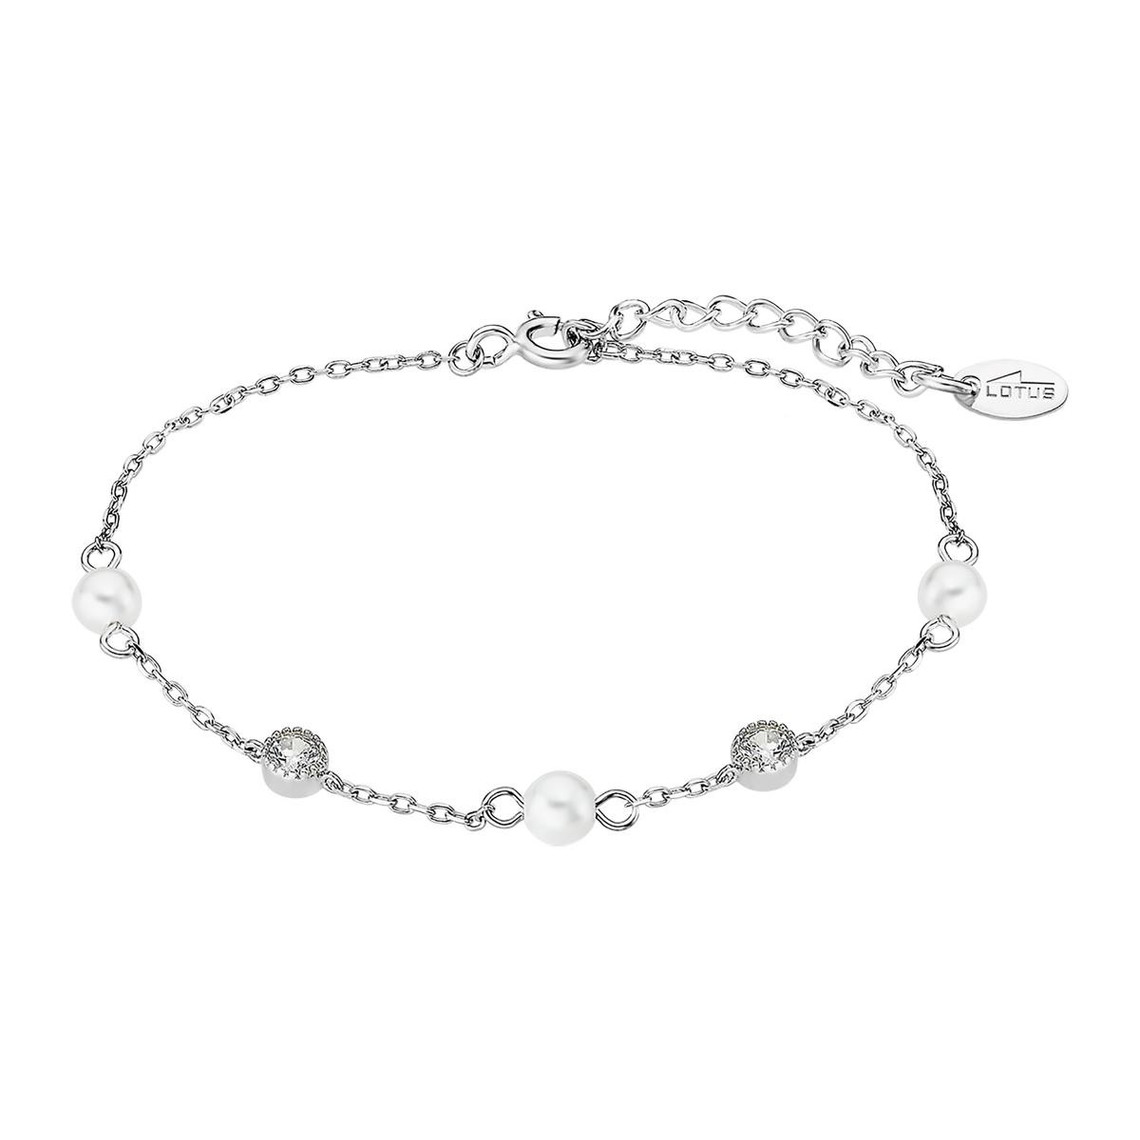 bracelet femme lotus silver - lp3411-2-1 argent